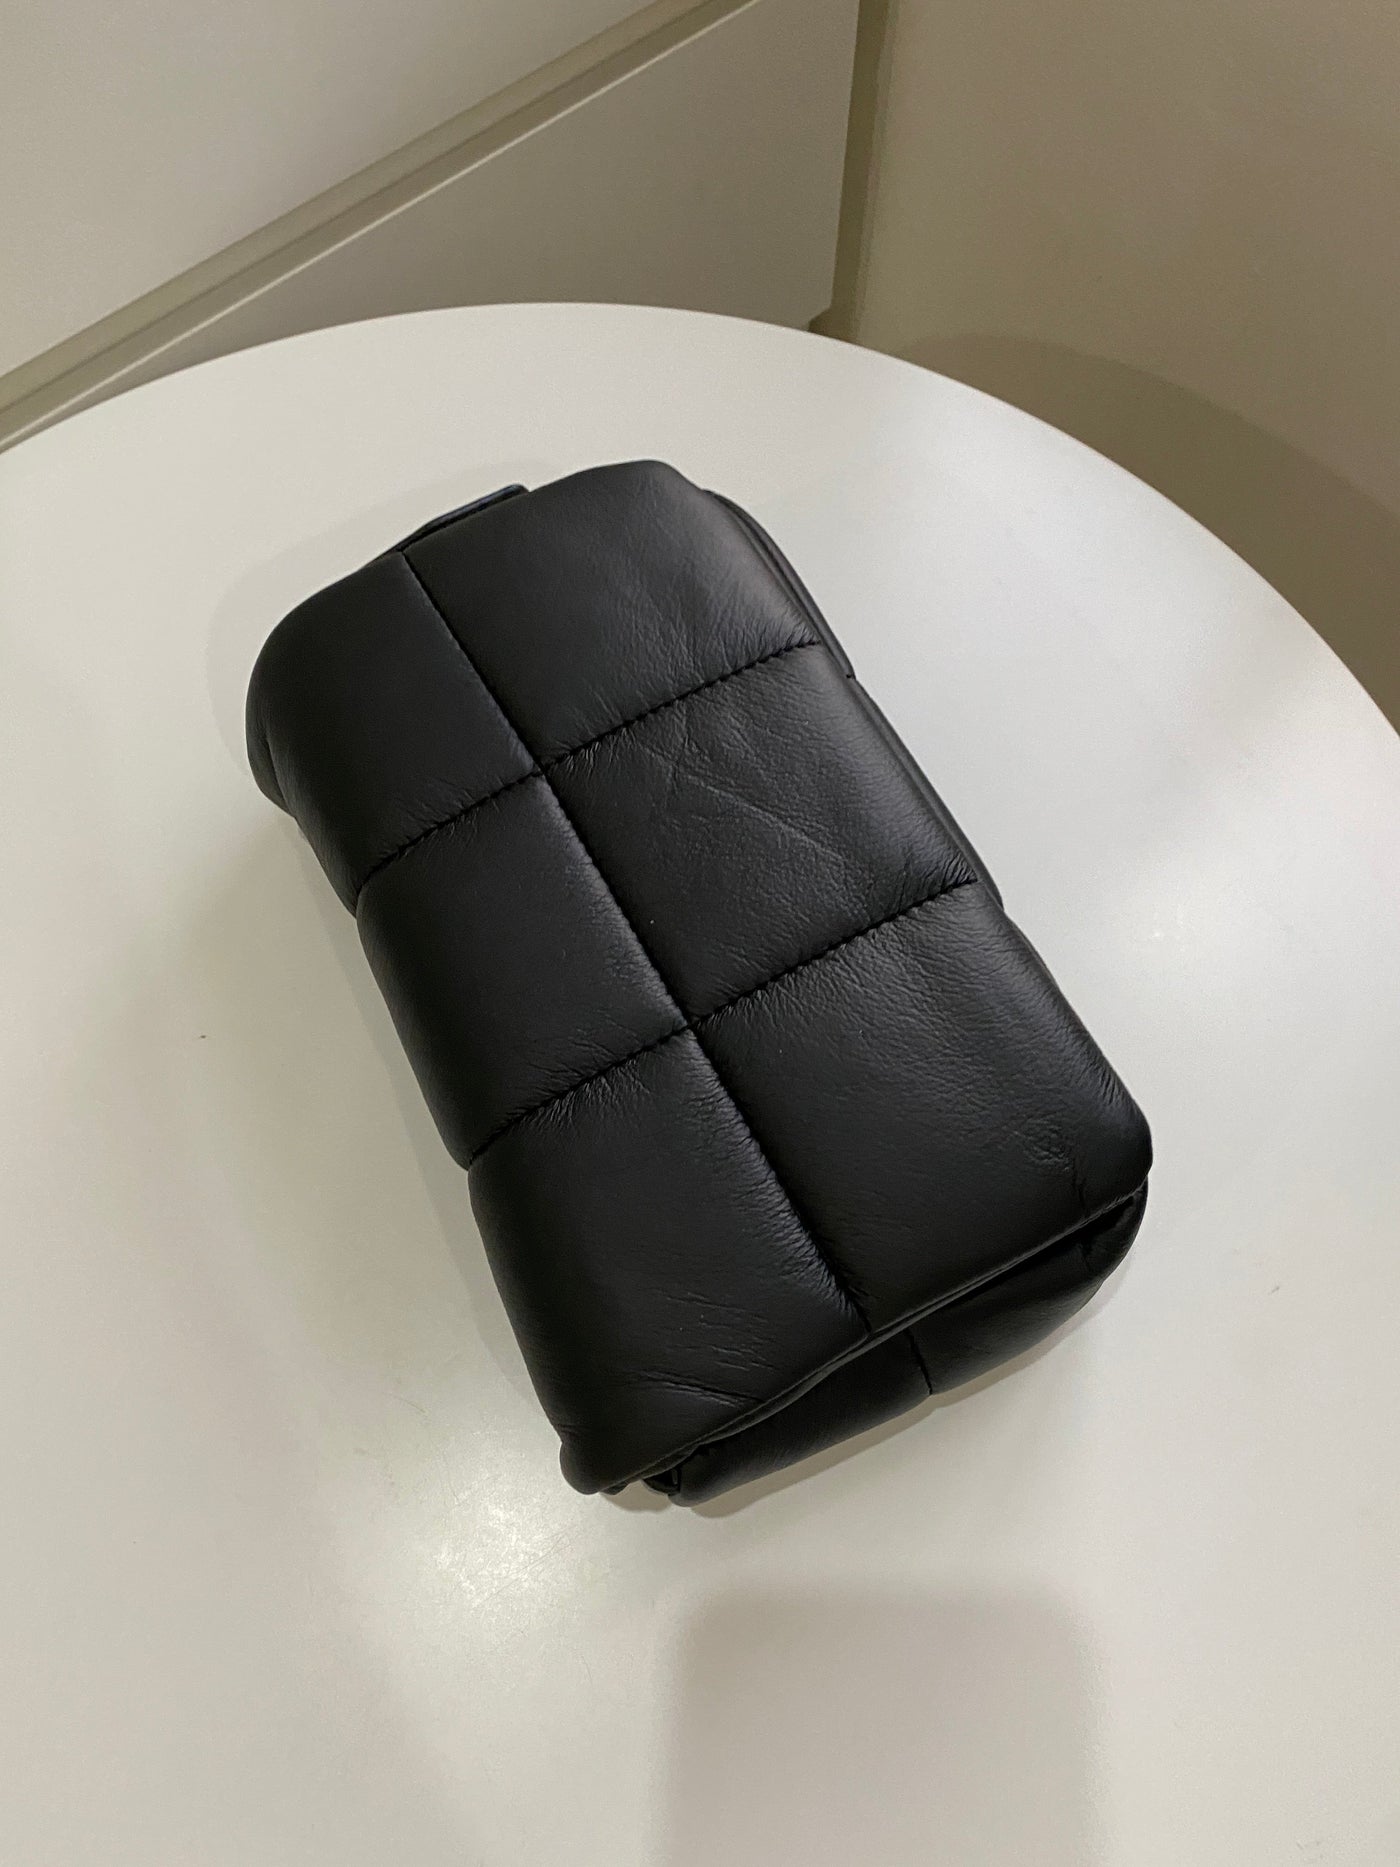 Quilted Shoulder Bag - Black